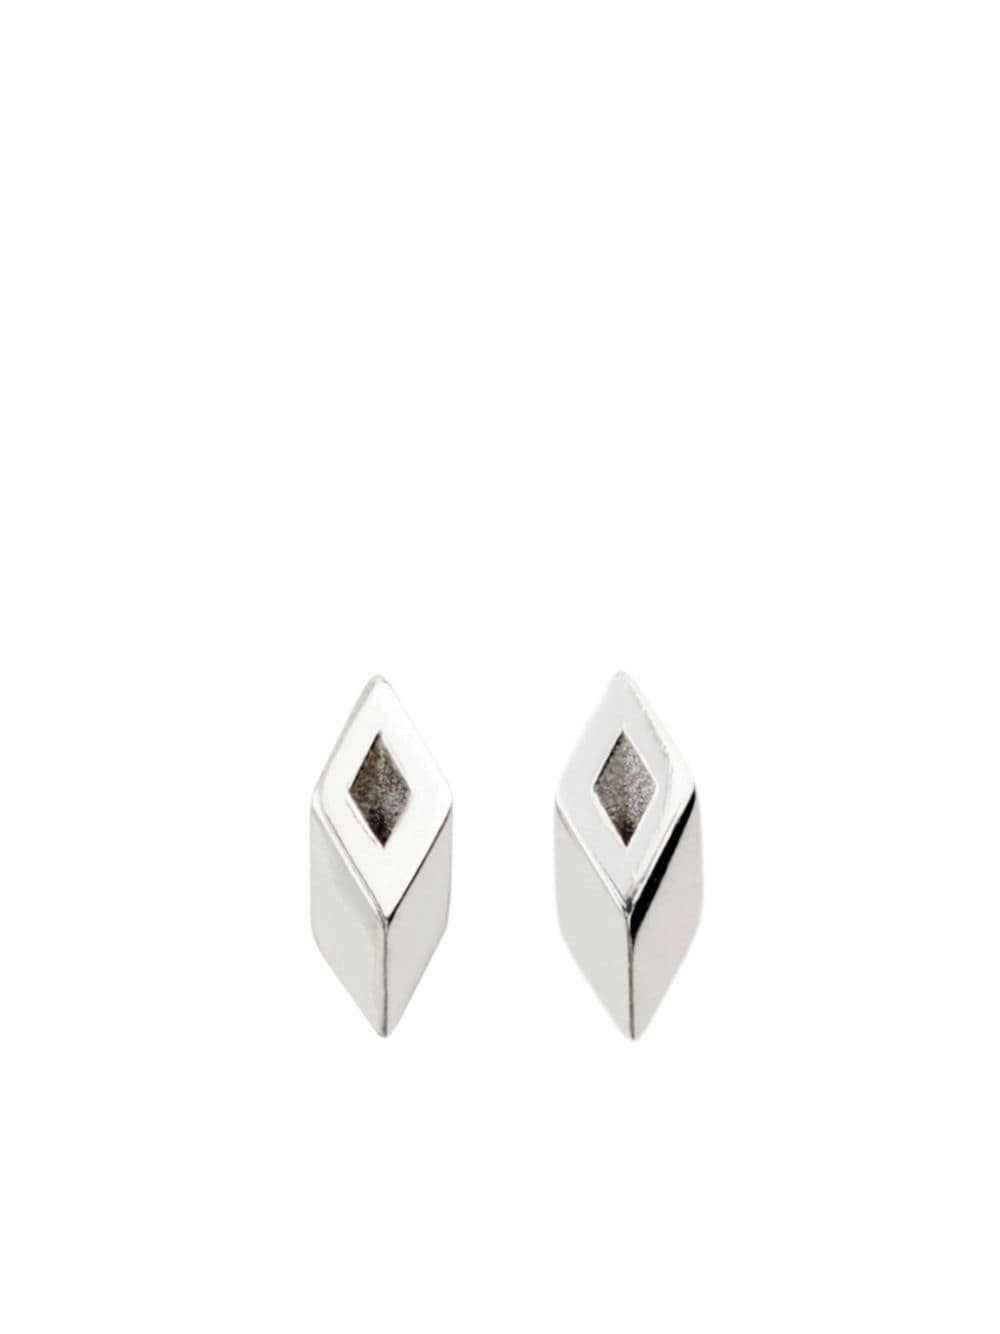 Hollow silver stud earrings - 1